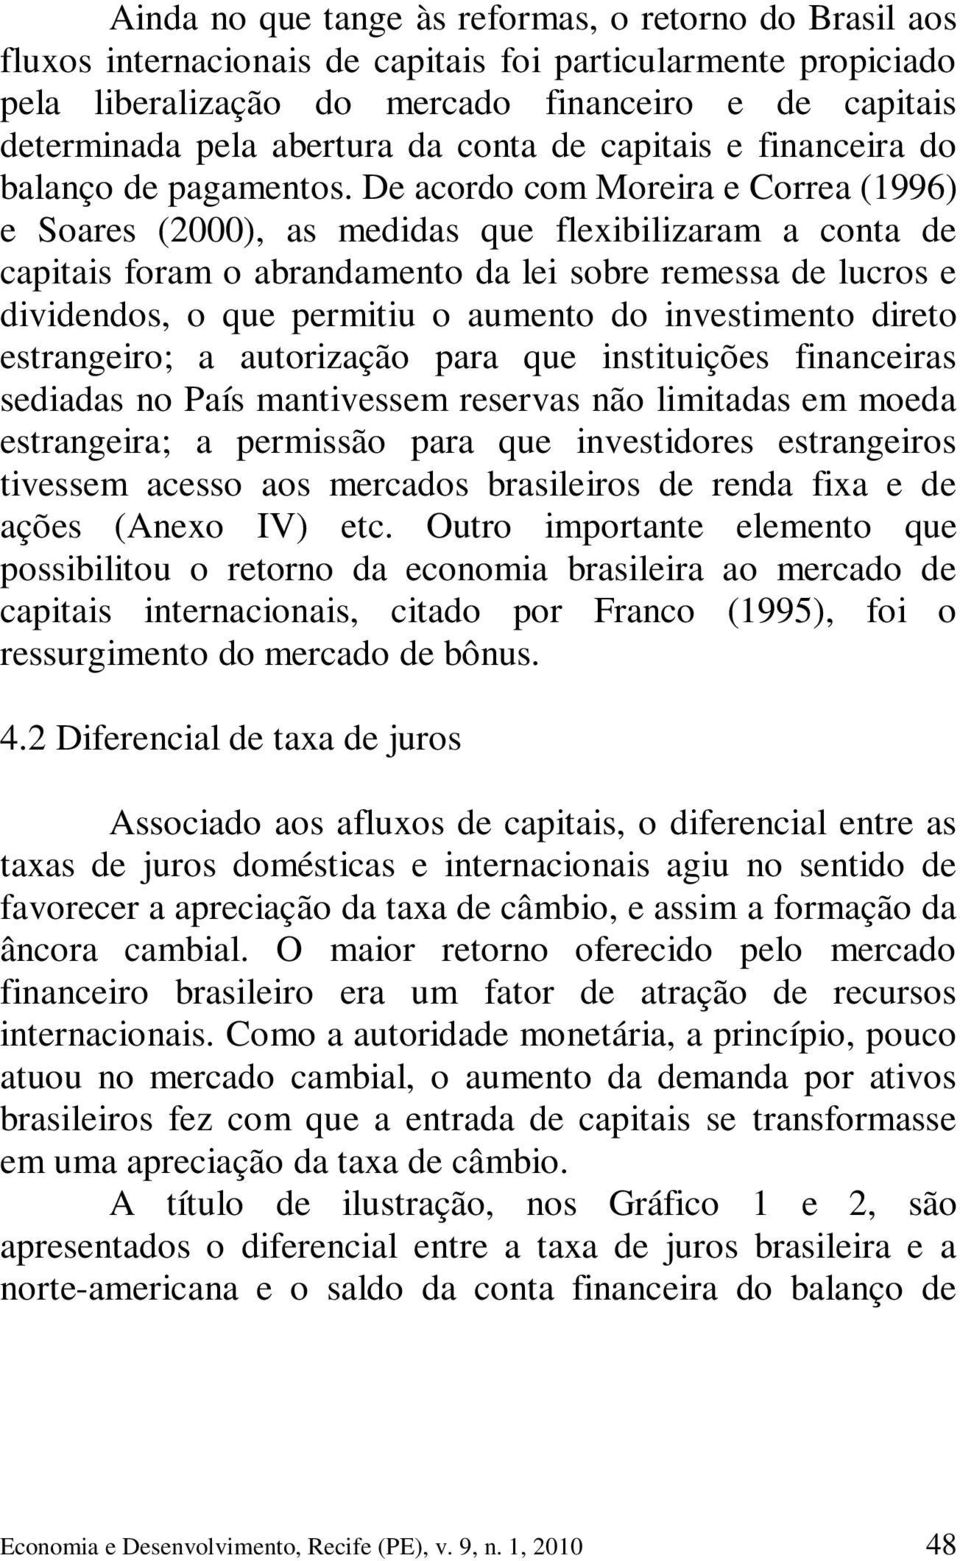 De acordo com Moreira e Correa (1996) e Soares (2000), as medidas que flexibilizaram a conta de capitais foram o abrandamento da lei sobre remessa de lucros e dividendos, o que permitiu o aumento do